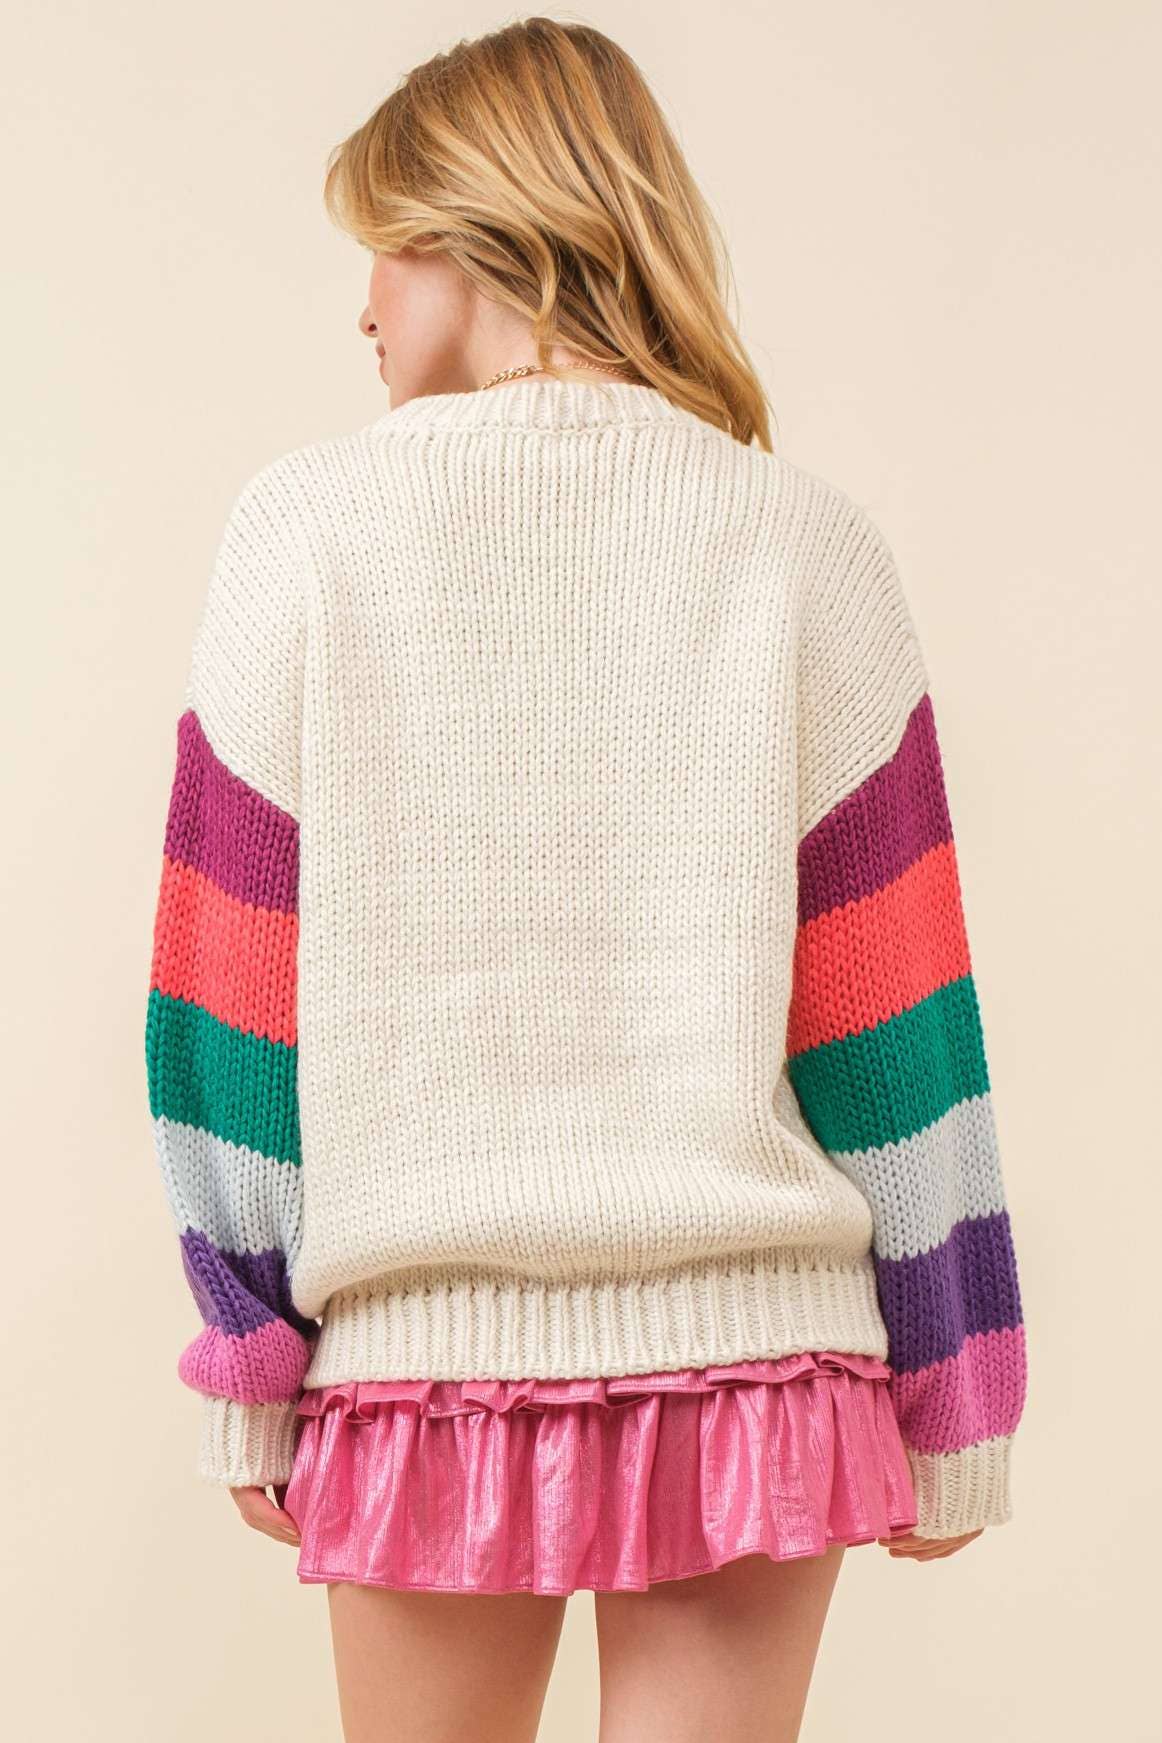 Main Strip - 3D Heart Crochet Multi Stripe Contrast Sweater